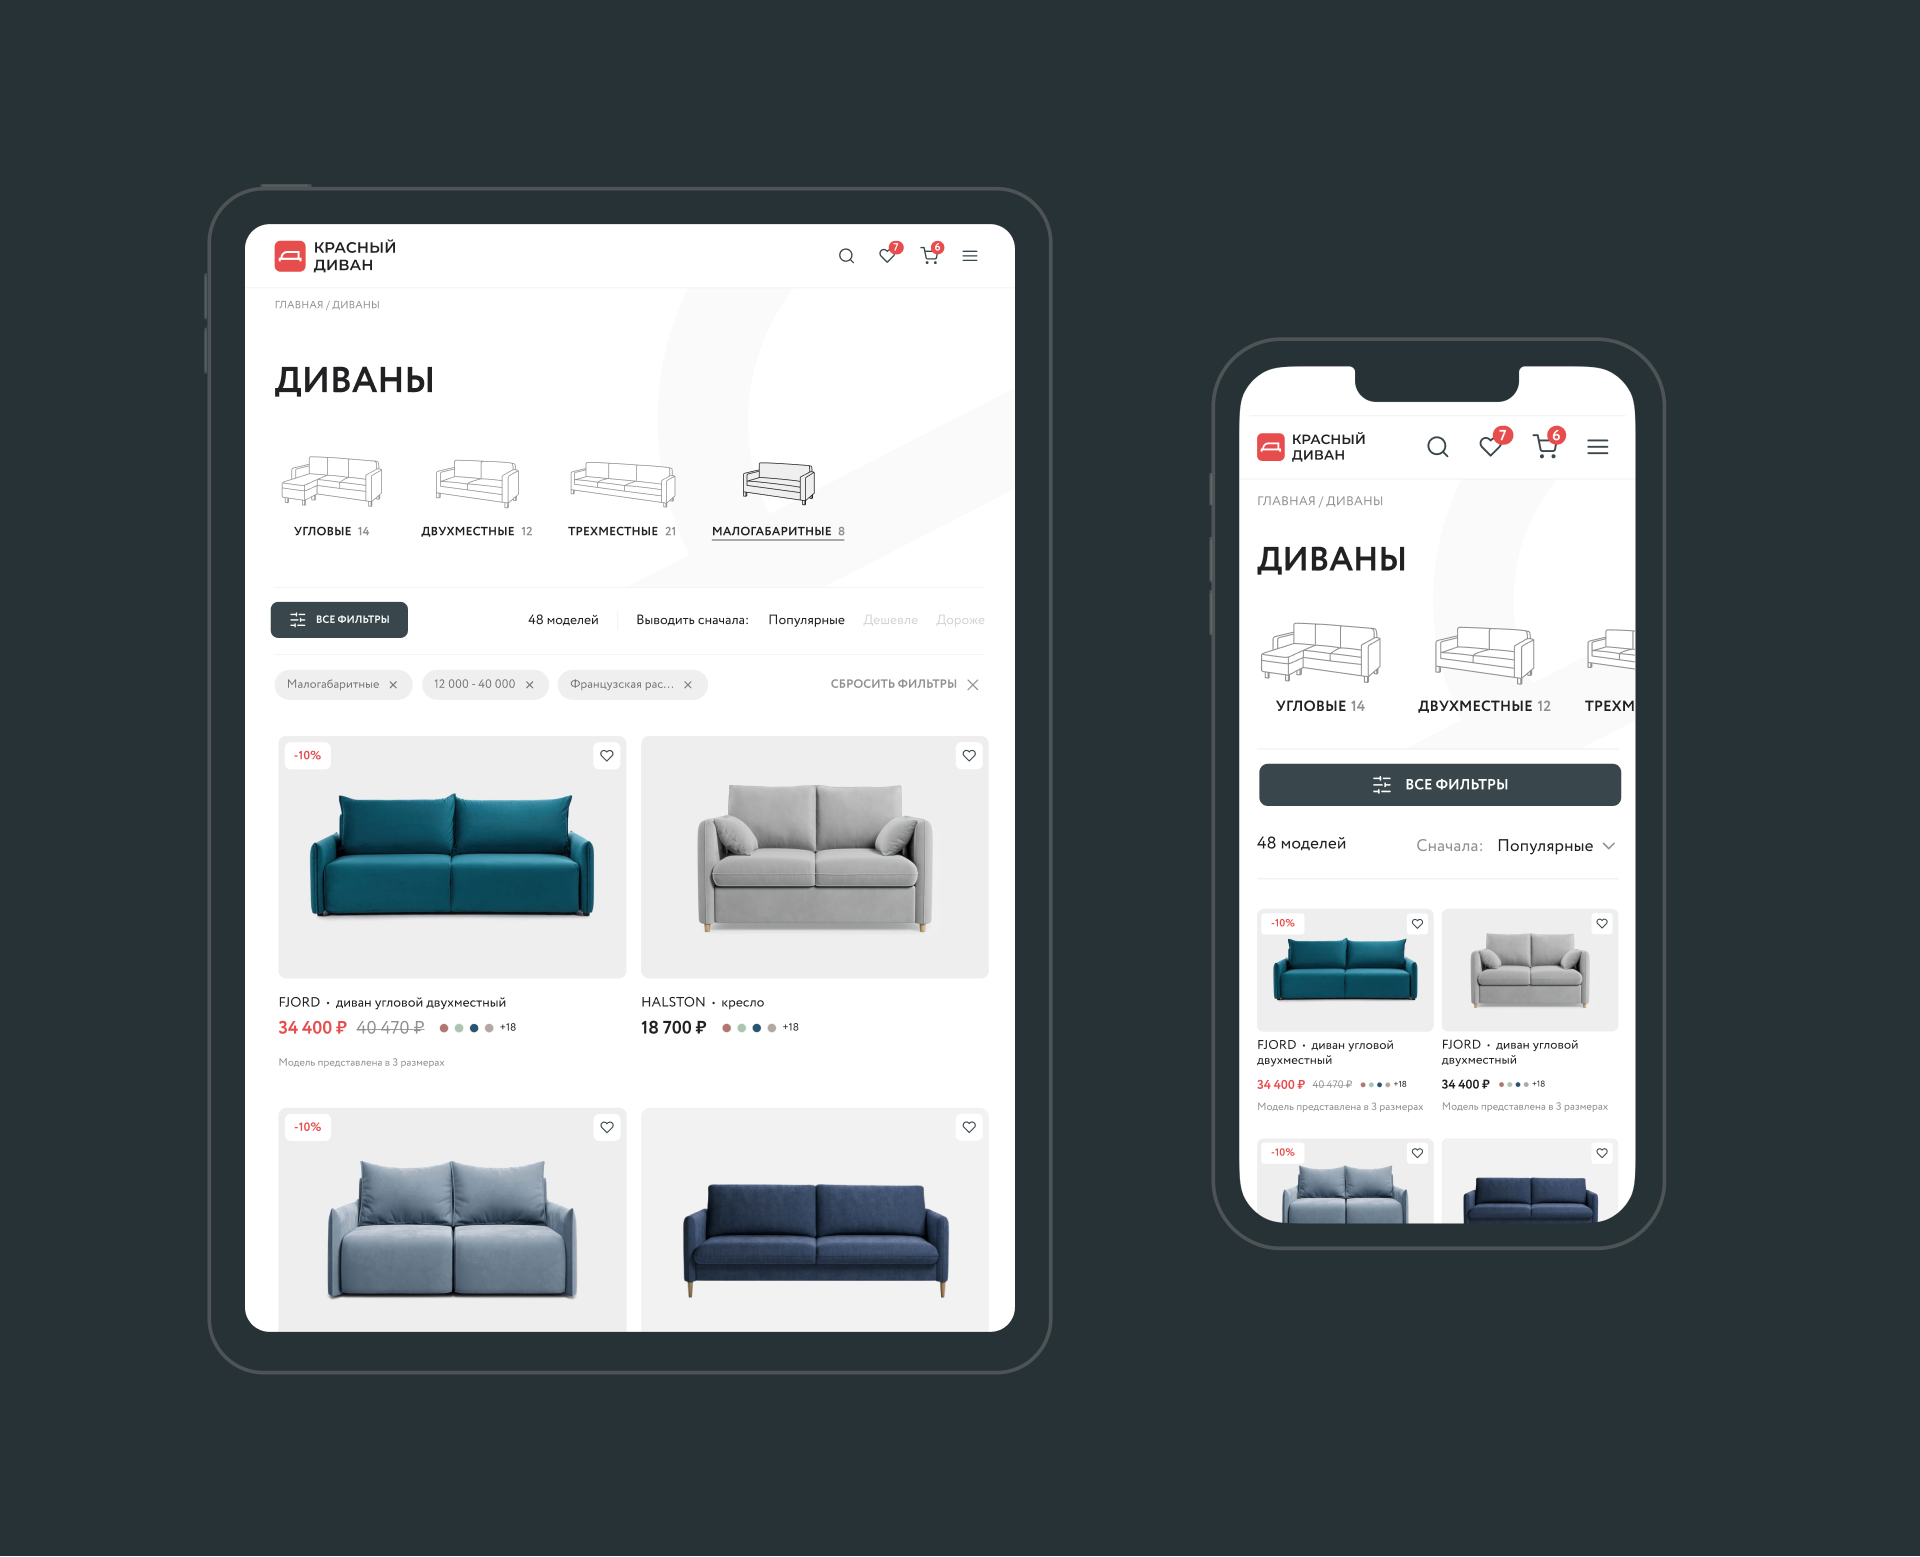 Красный диван — Изображение №3 — Интерфейсы, Анимация на Dprofile